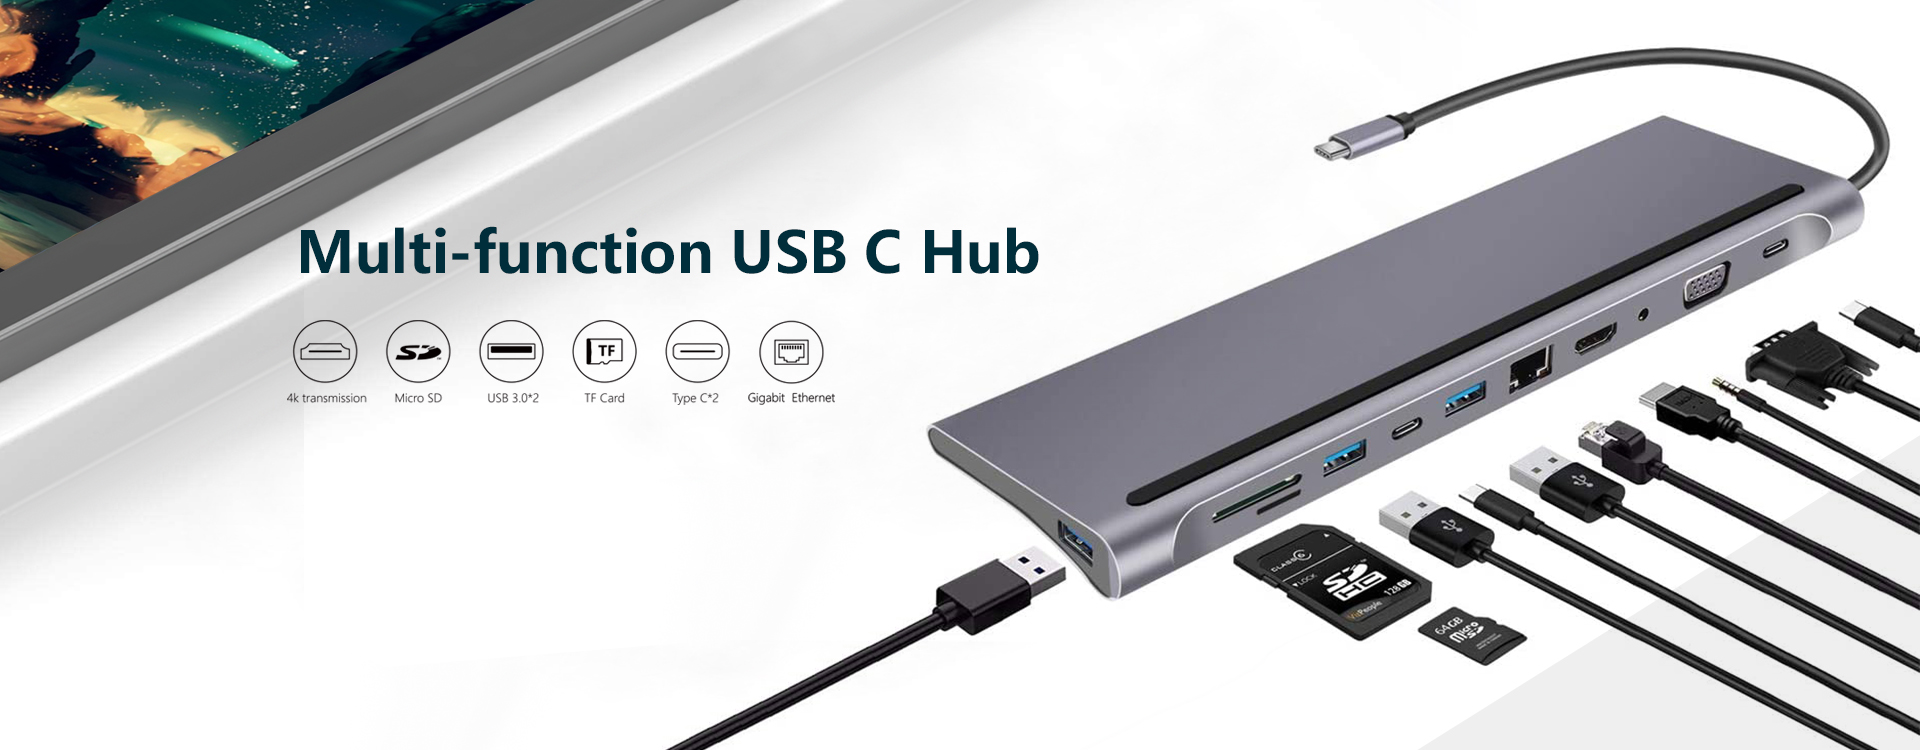 USB C hub